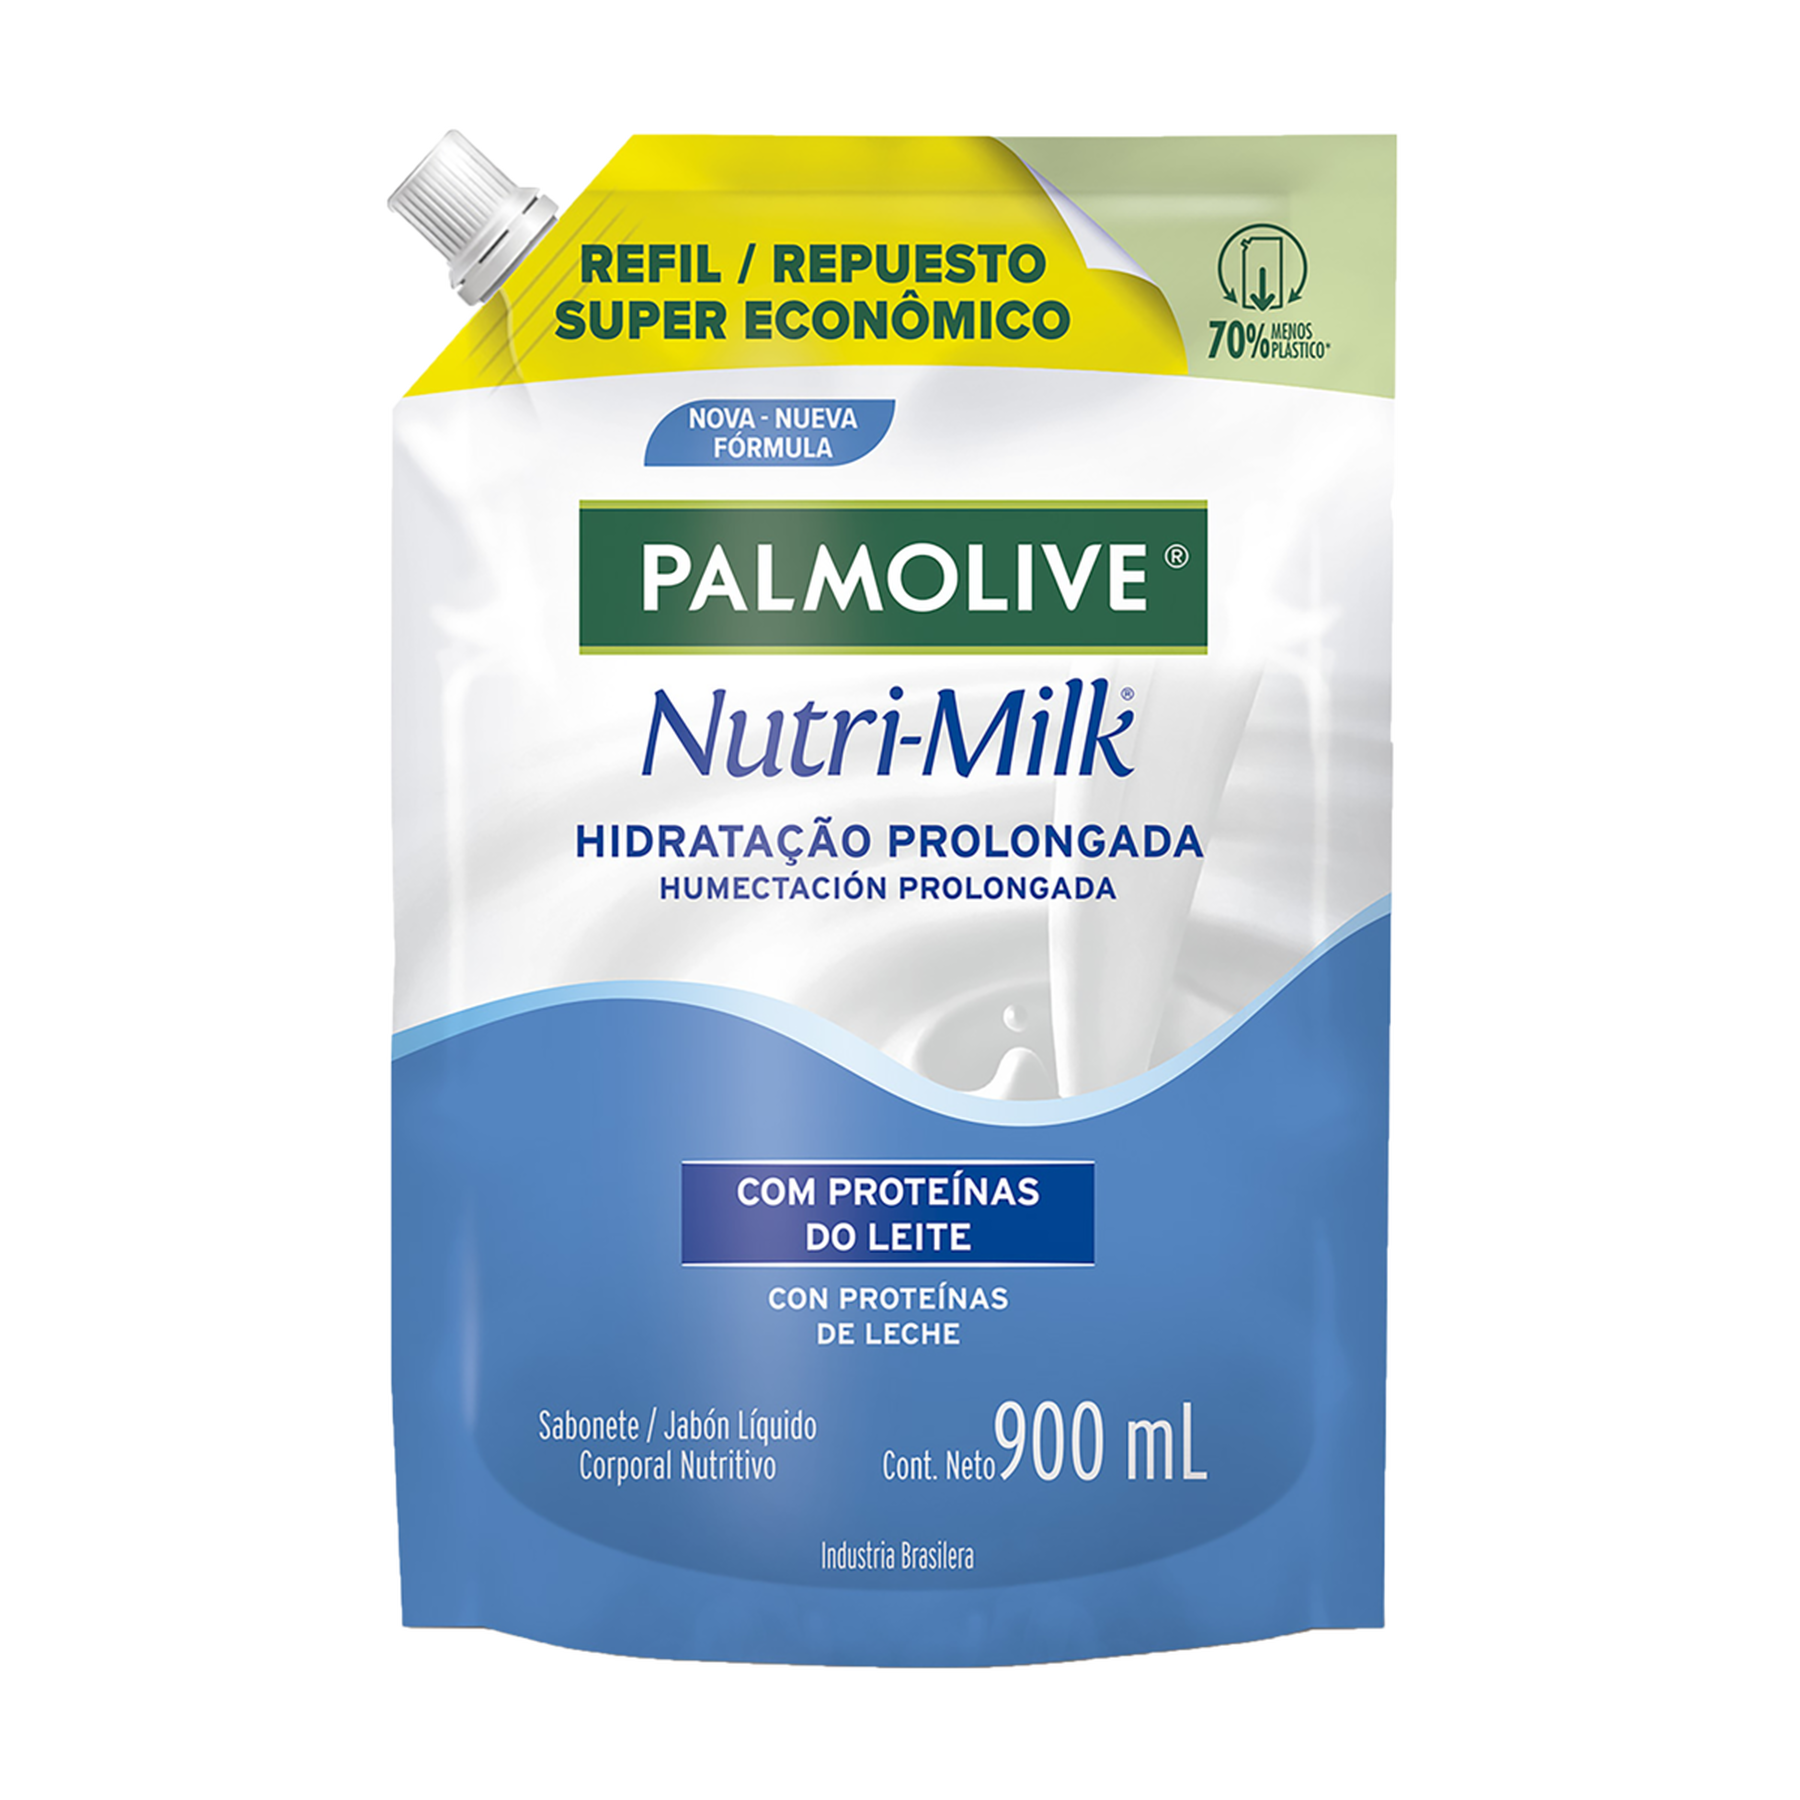 Sabonete Líquido Hidratação Prolongada Nutri-Milk Palmolive Sachê 900ml Refil - Embalagem Super Econômico